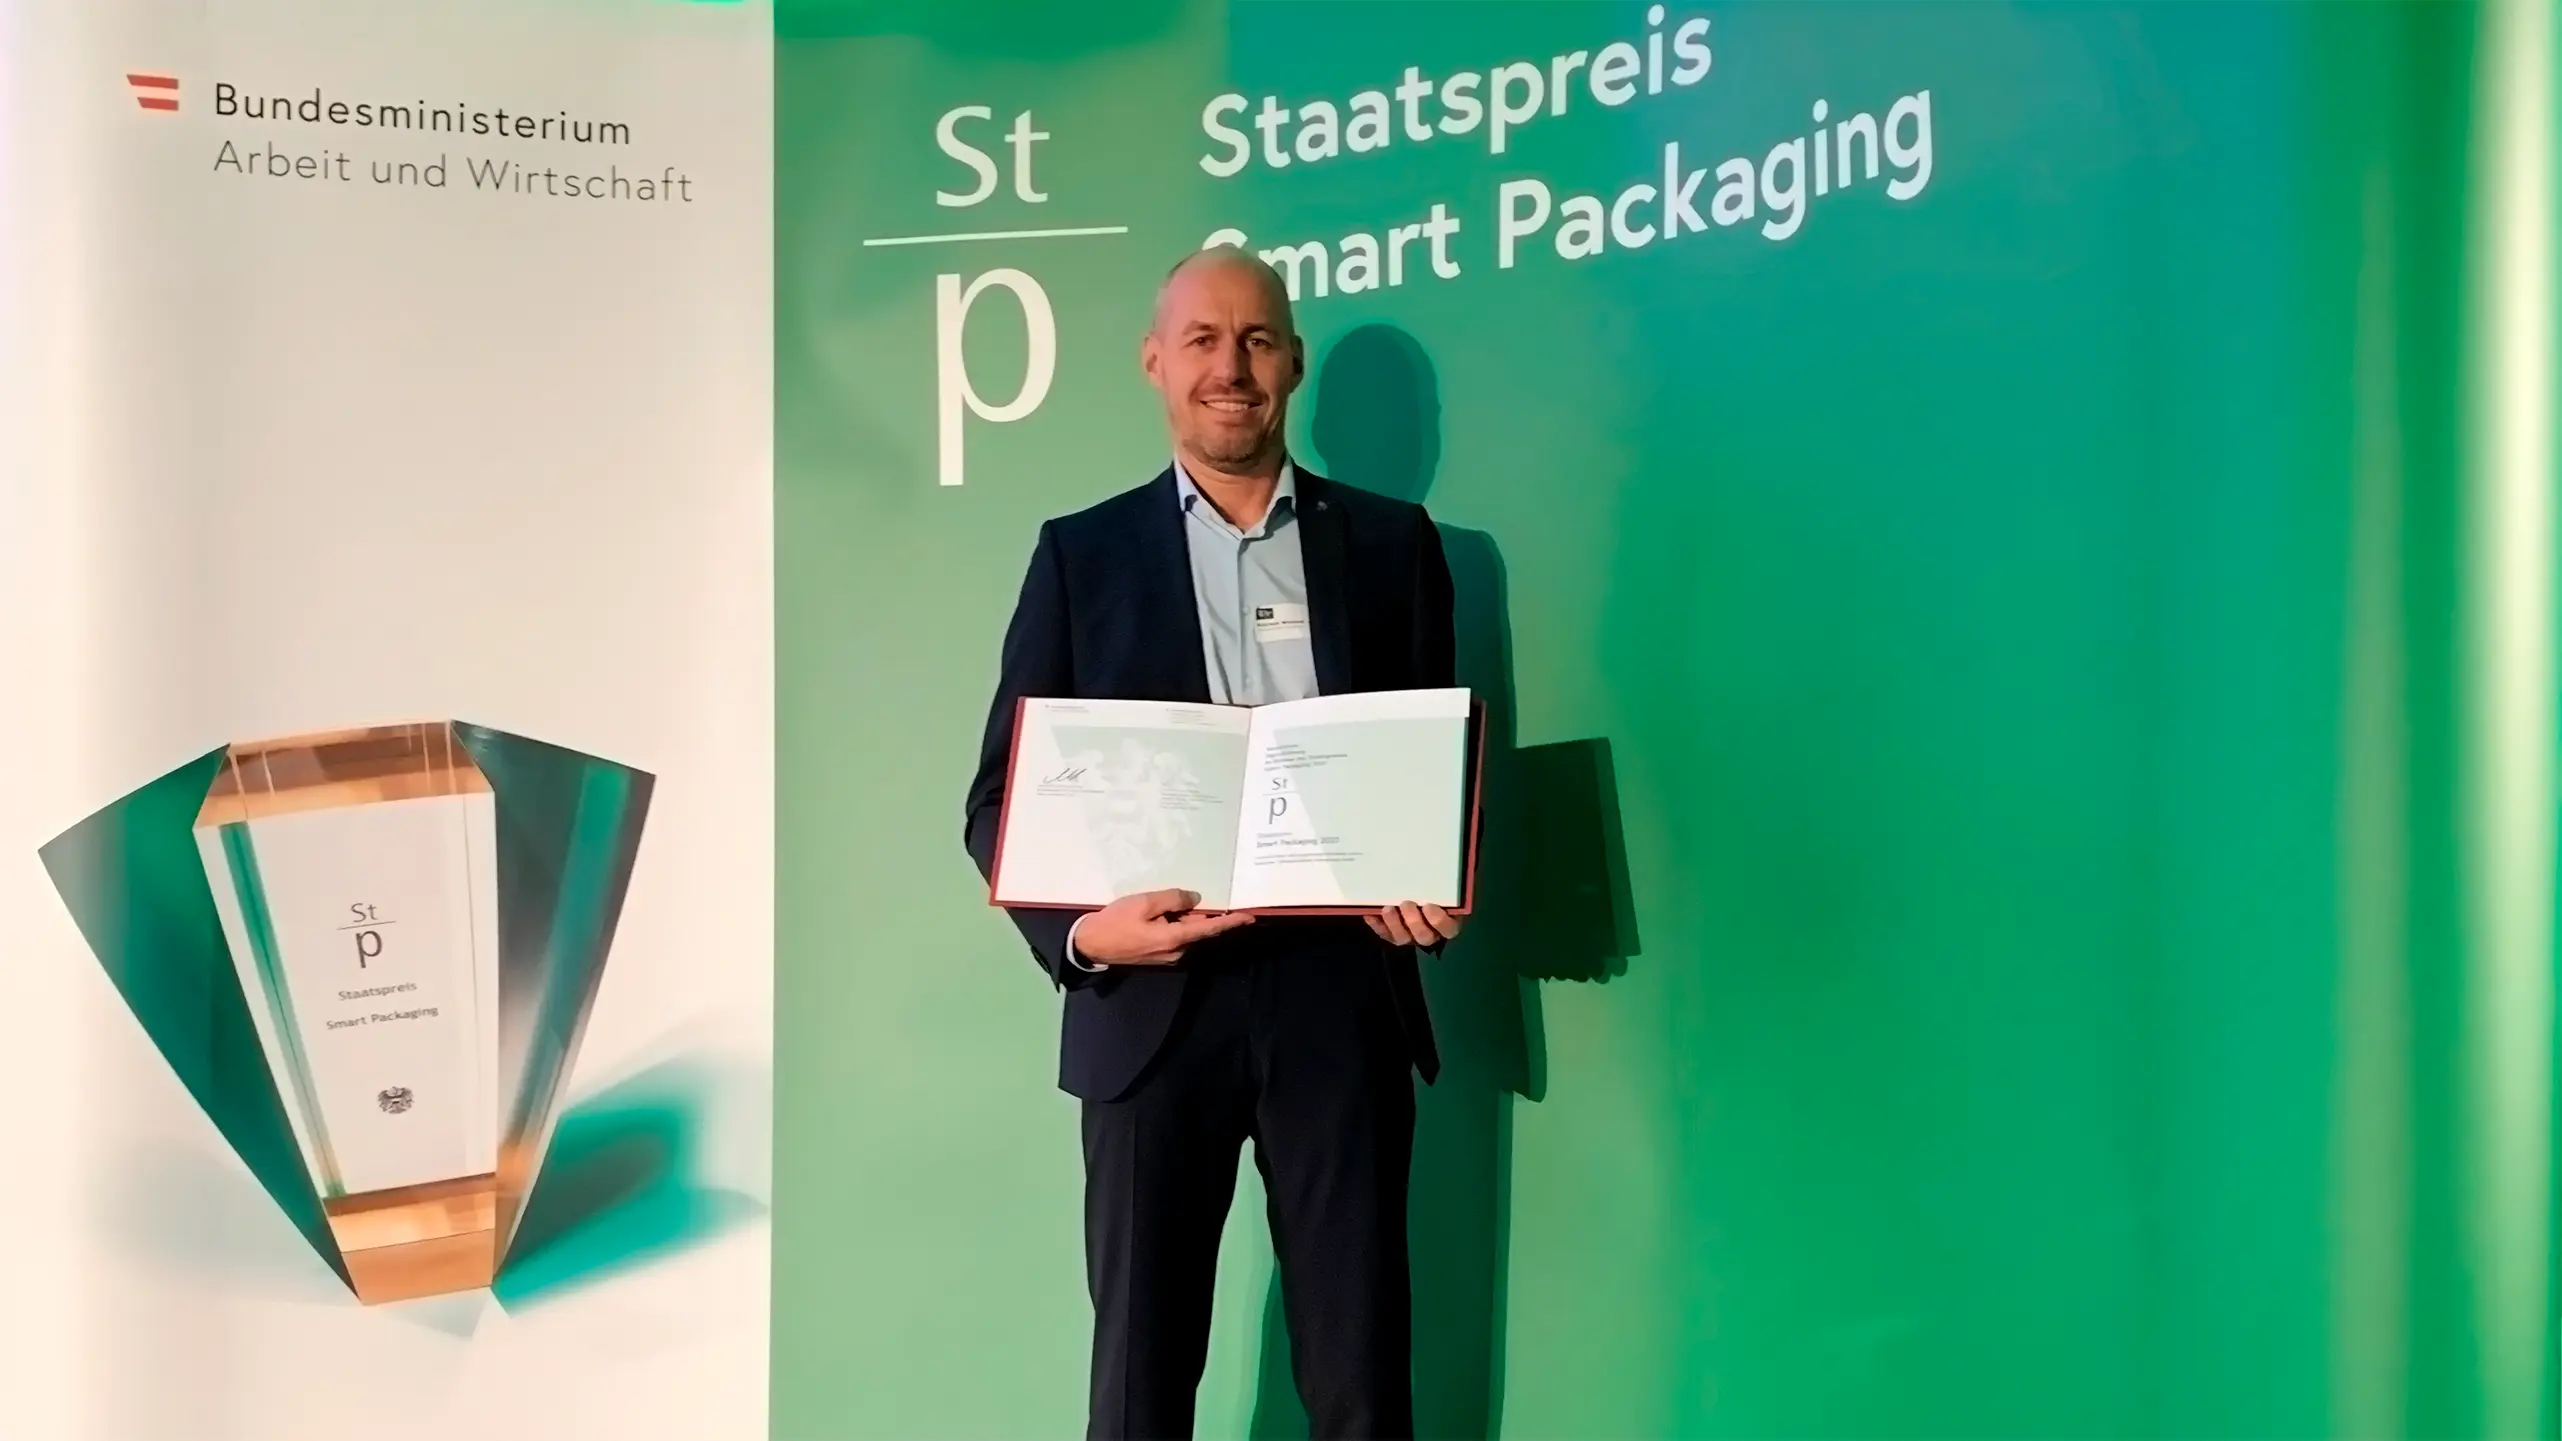 Der Onlineshop "die-verpackungs-druckerei" wird mit dem Staatspreis "Smart Packaging" ausgezeichnet